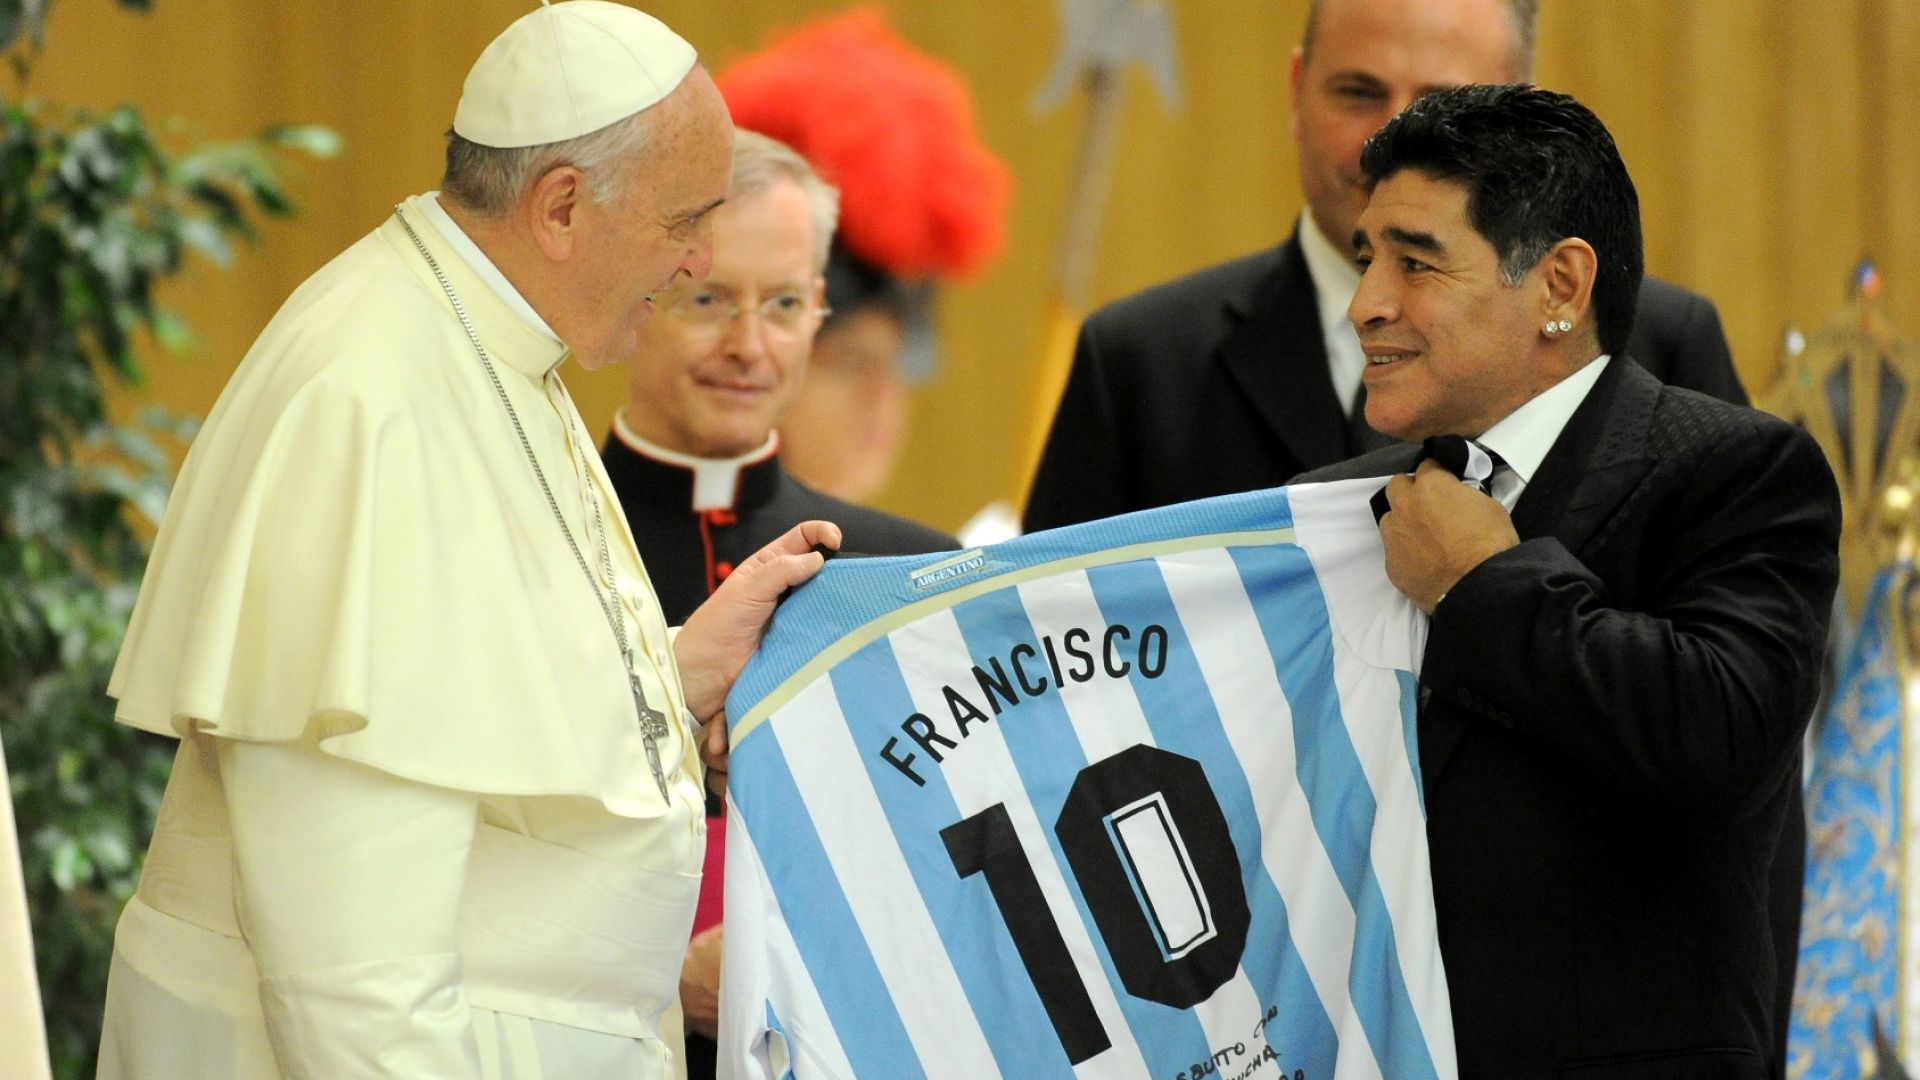 Папата говори за Марадона: Той бе поет на терена и изключително раним човек